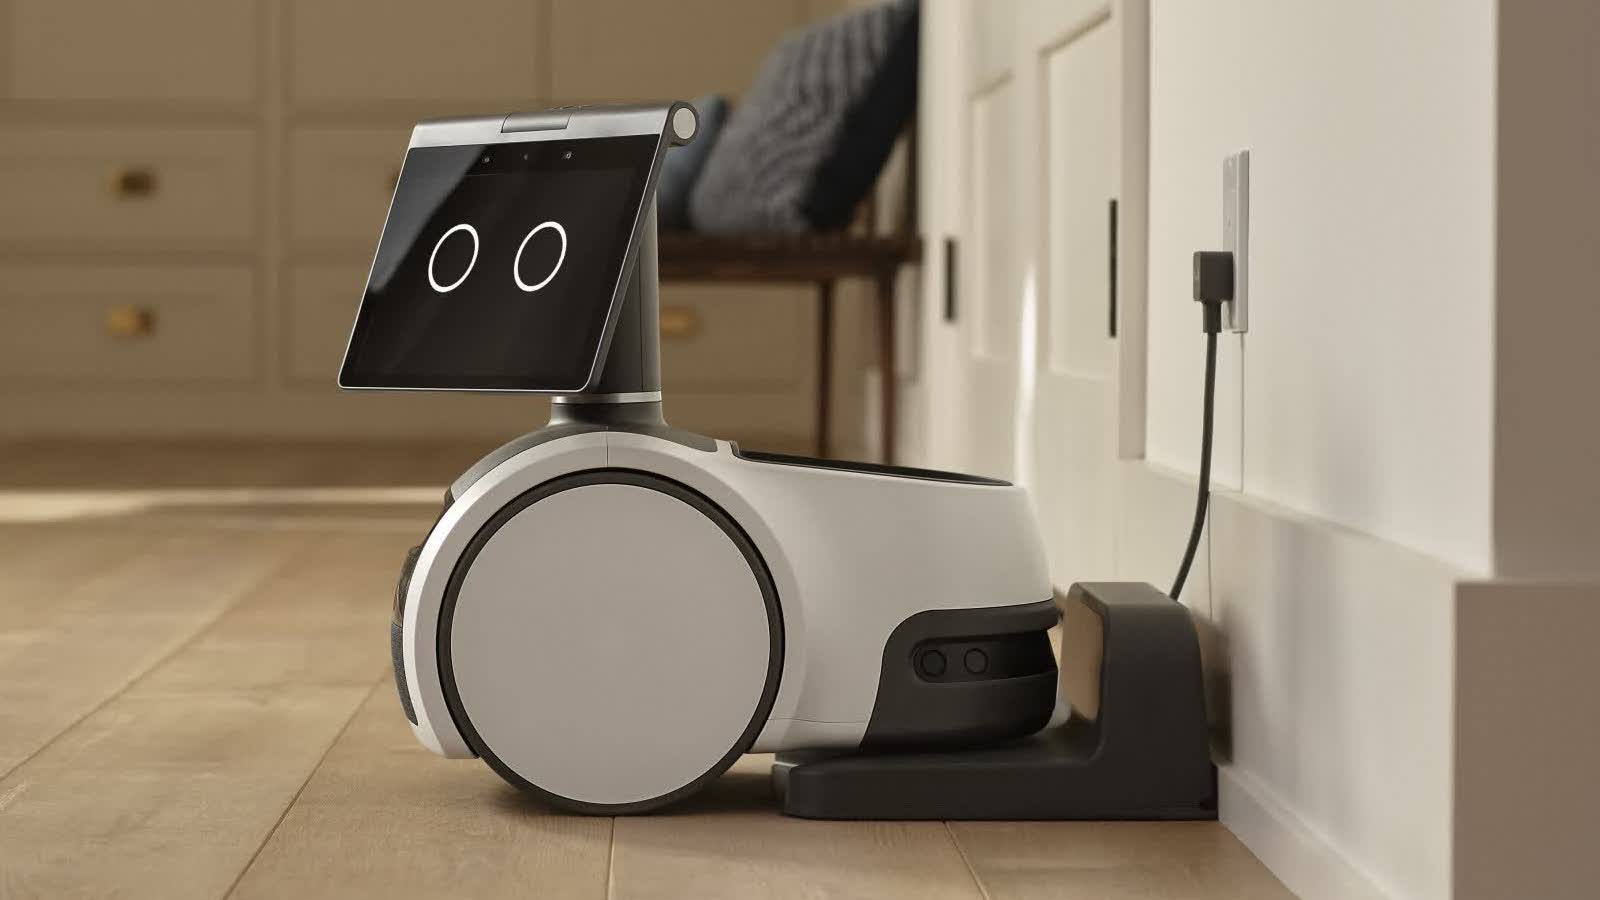 Amazon-Astro-Alexa-Enabled-Household-Monitoring-Robot-